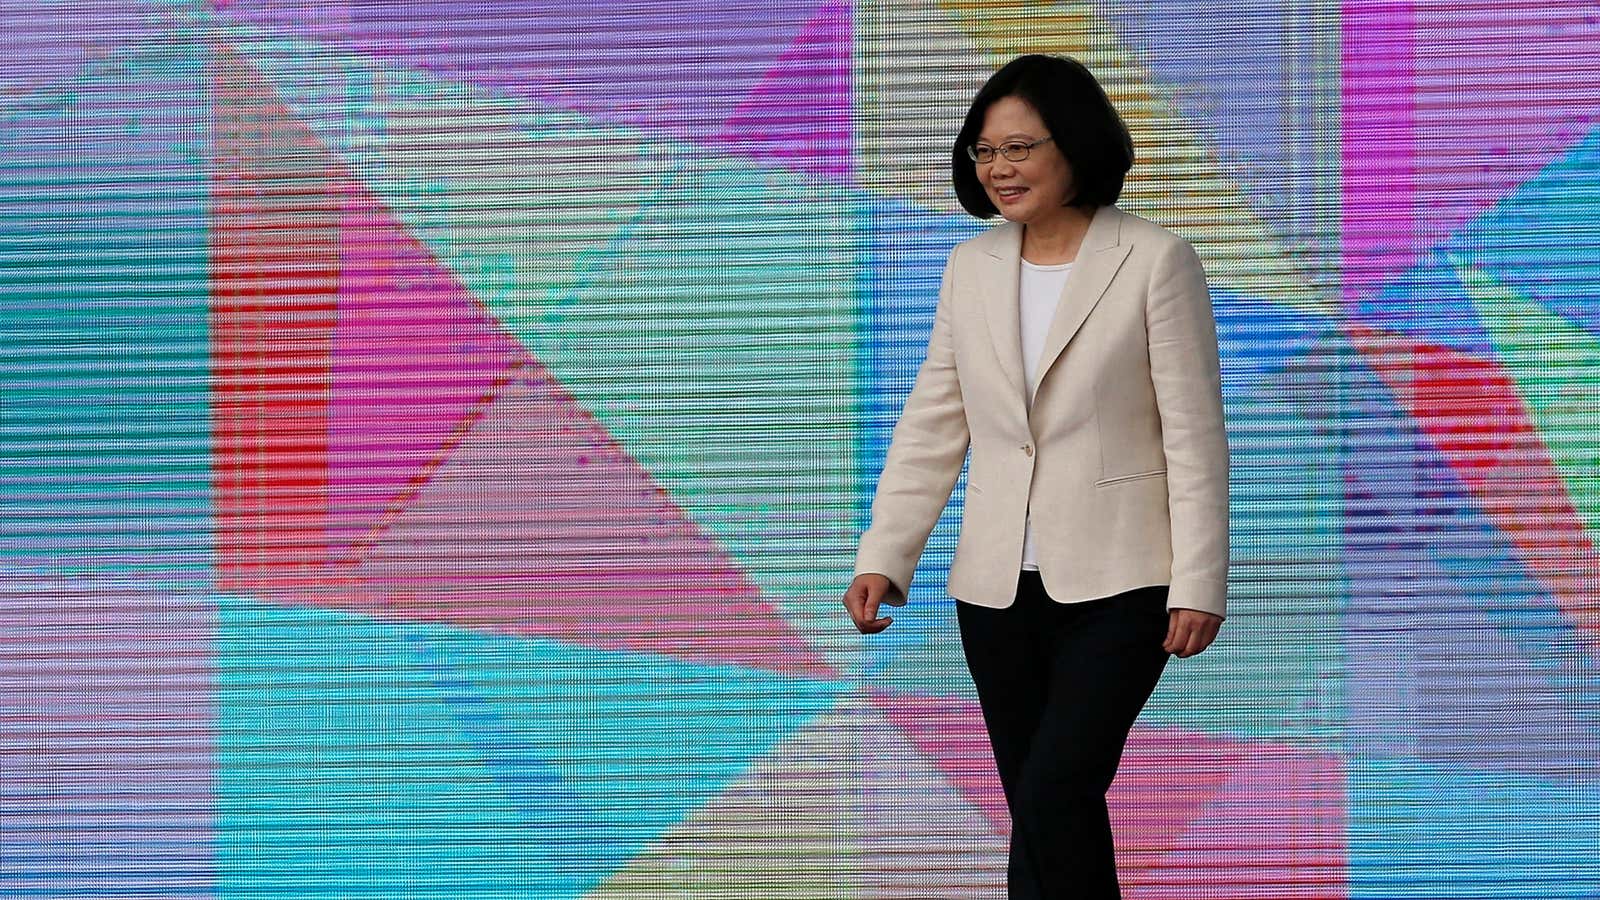 Taiwan’s president Tsai Ing-wen in her inauguration ceremony on May 20.